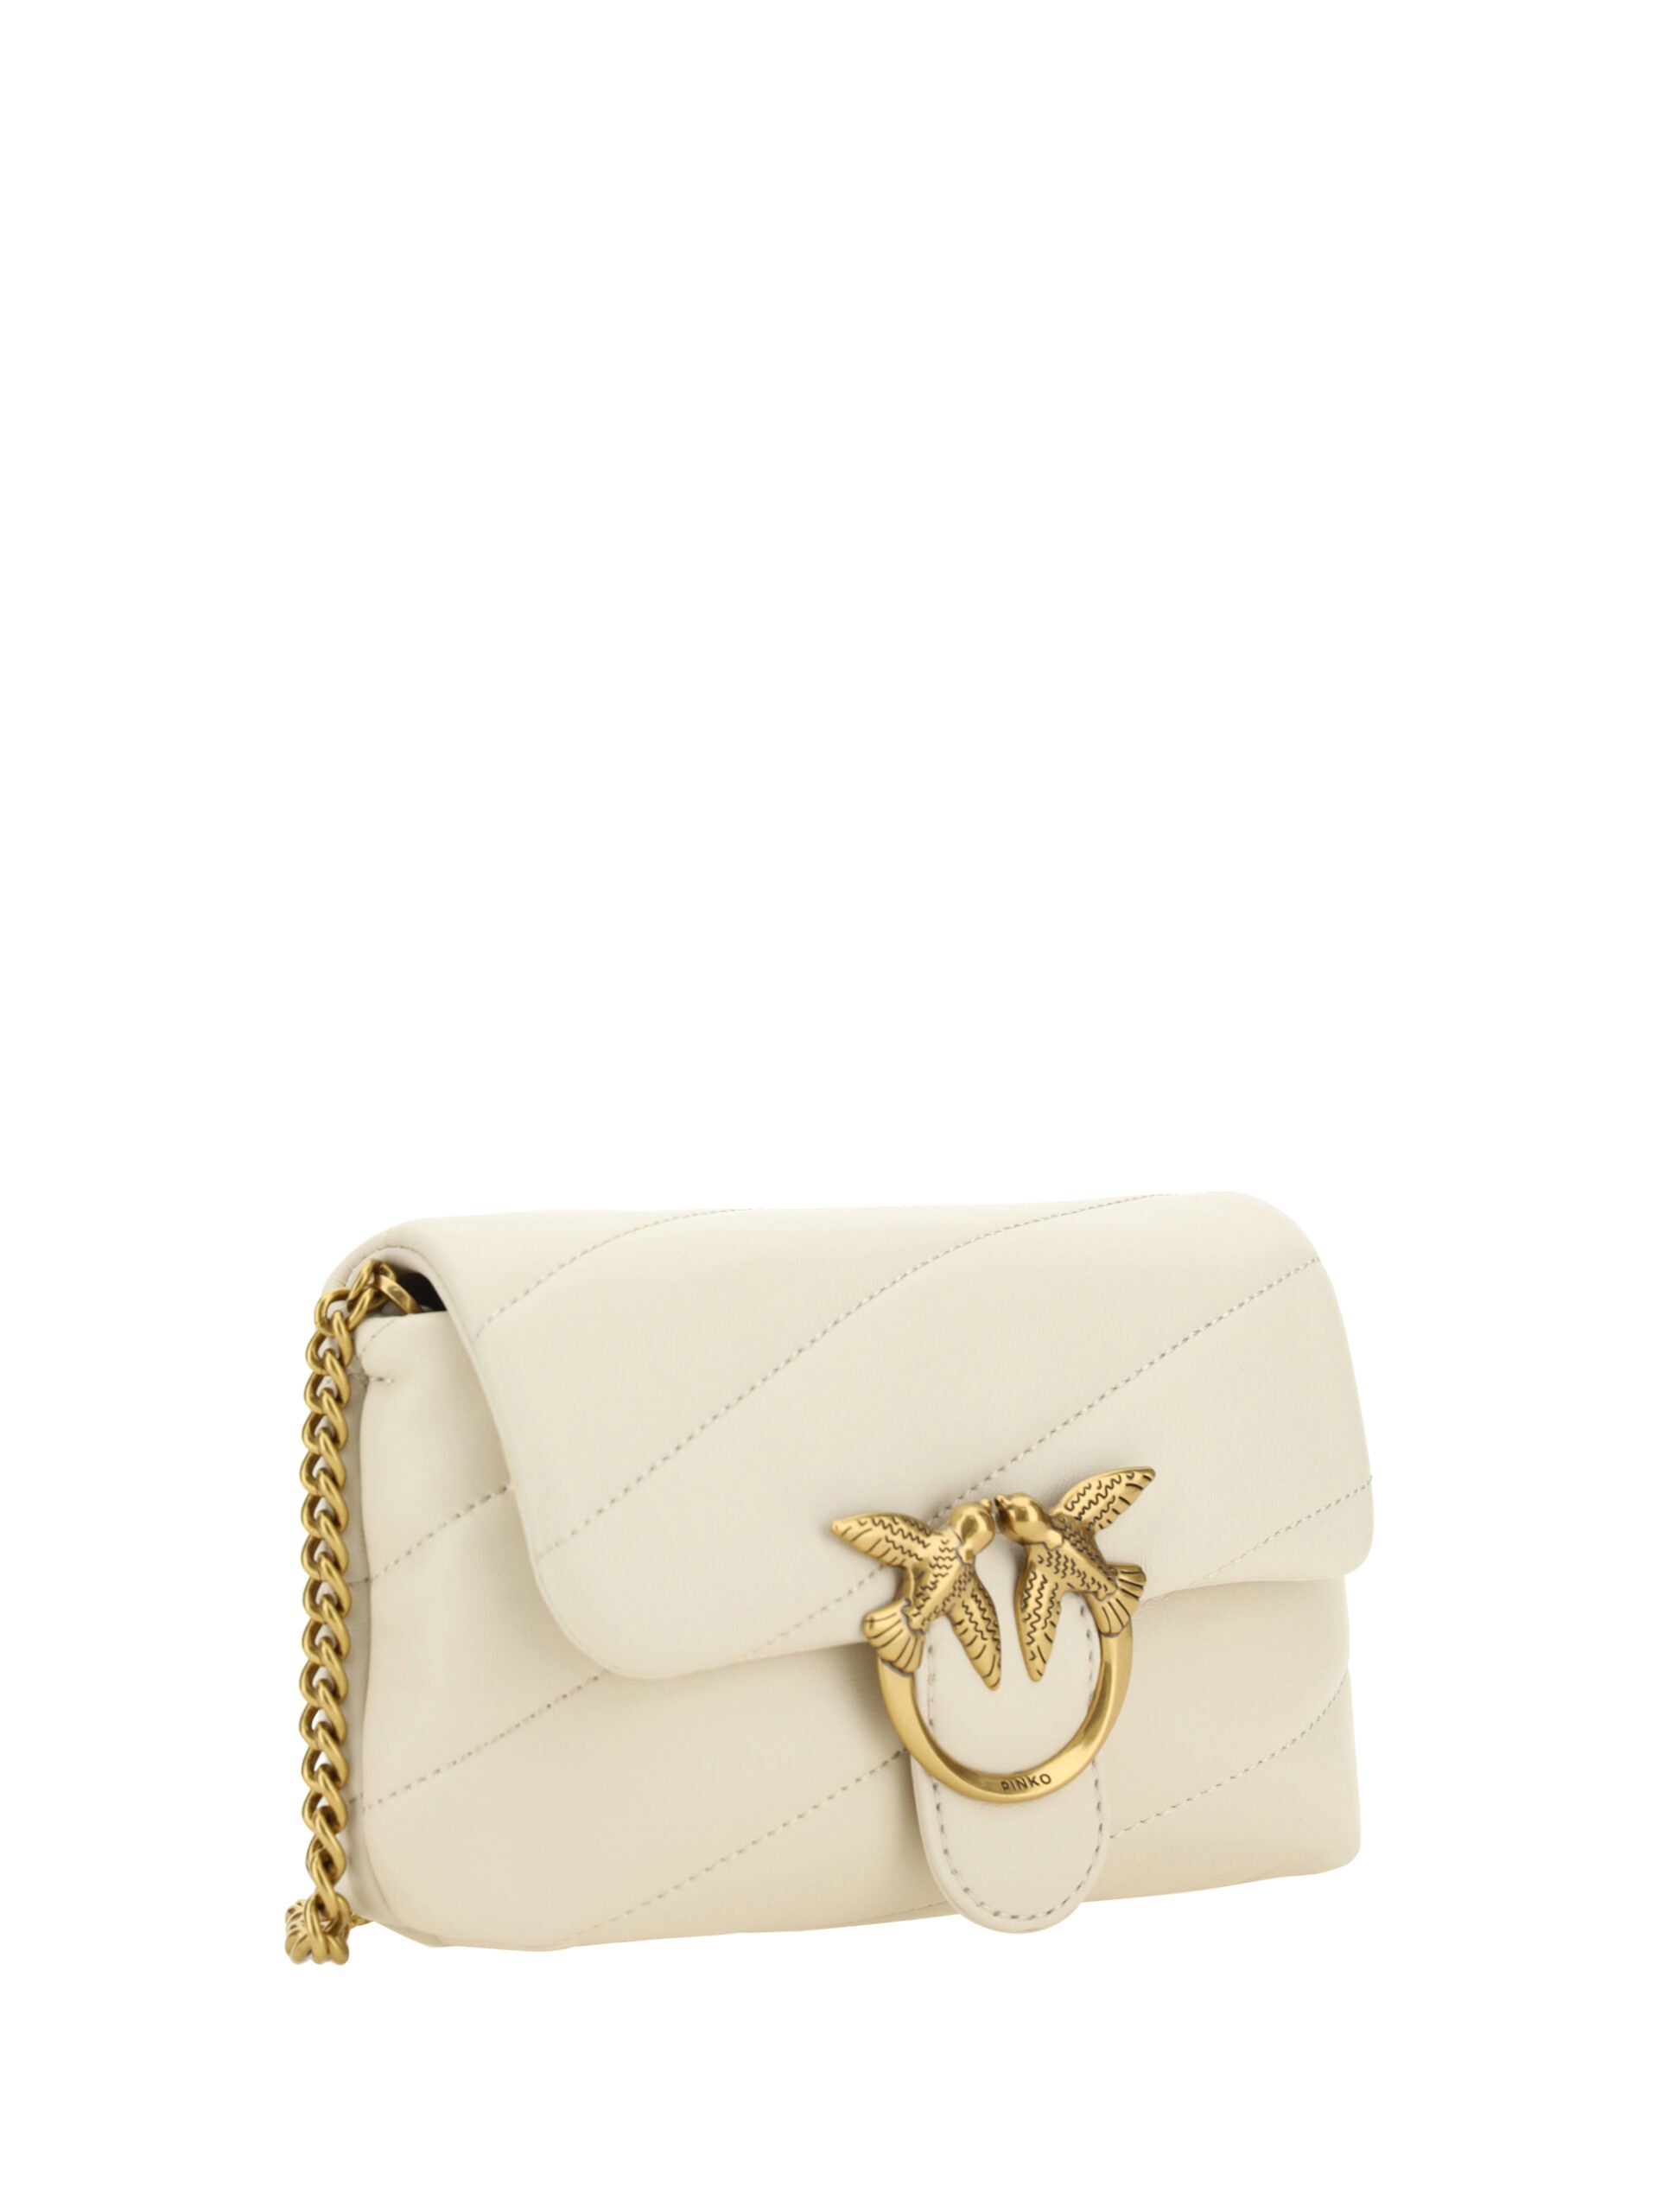 Elegant White Quilted Leather Shoulder Bag